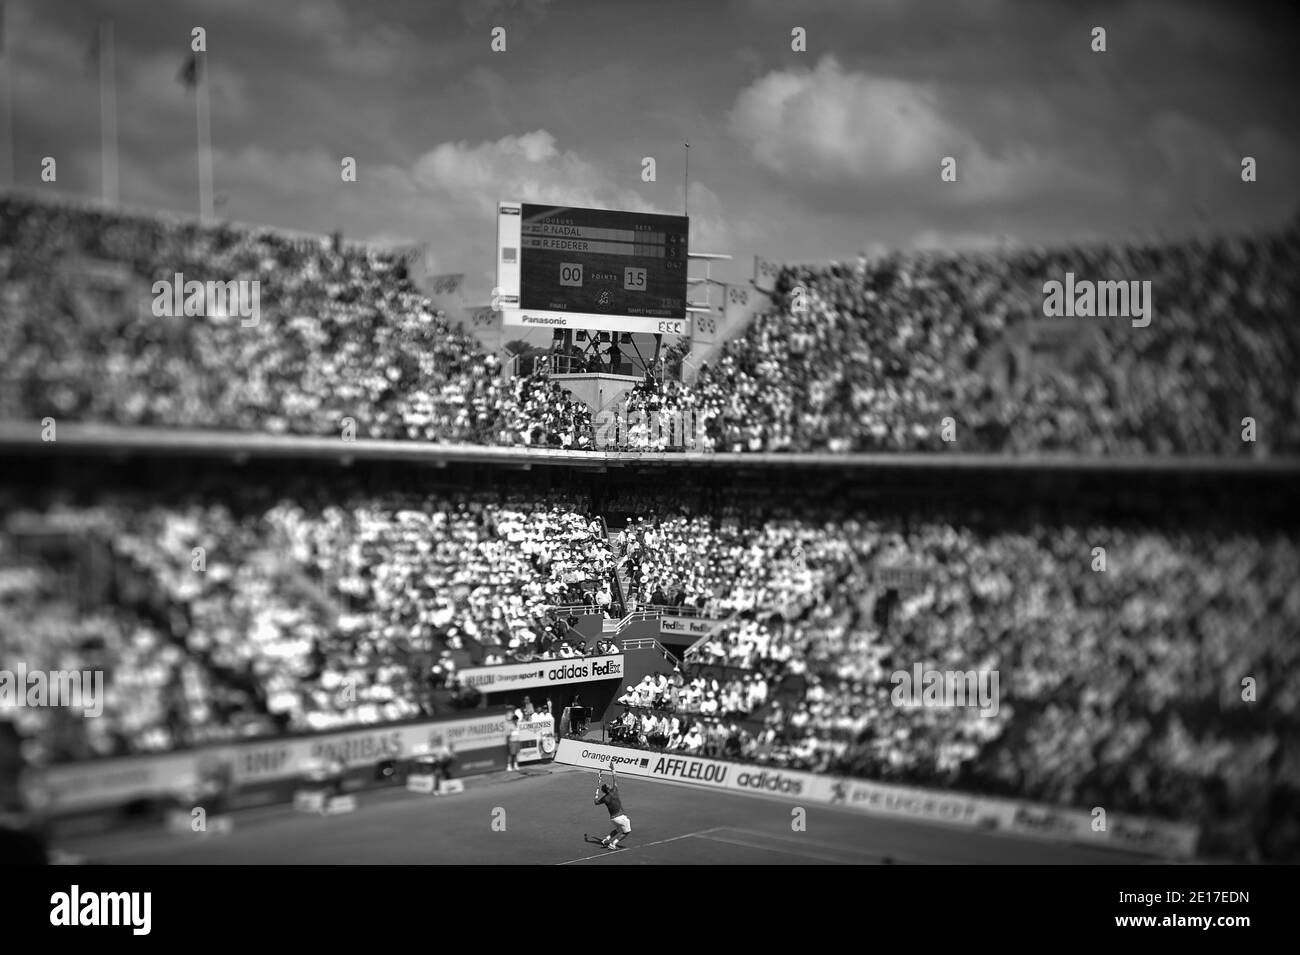 Atmosphère pendant la finale masculine du tennis français Open 2011 à l'arène Roland-Garros de Paris, France, le 5 juin 2011. L'Espagne Rafael Nadal bat Roger Federer 7-5, 7-6, 5-7, 6-1. Photo de Christophe Guibbbaud/ABACAPRESS.COM Banque D'Images